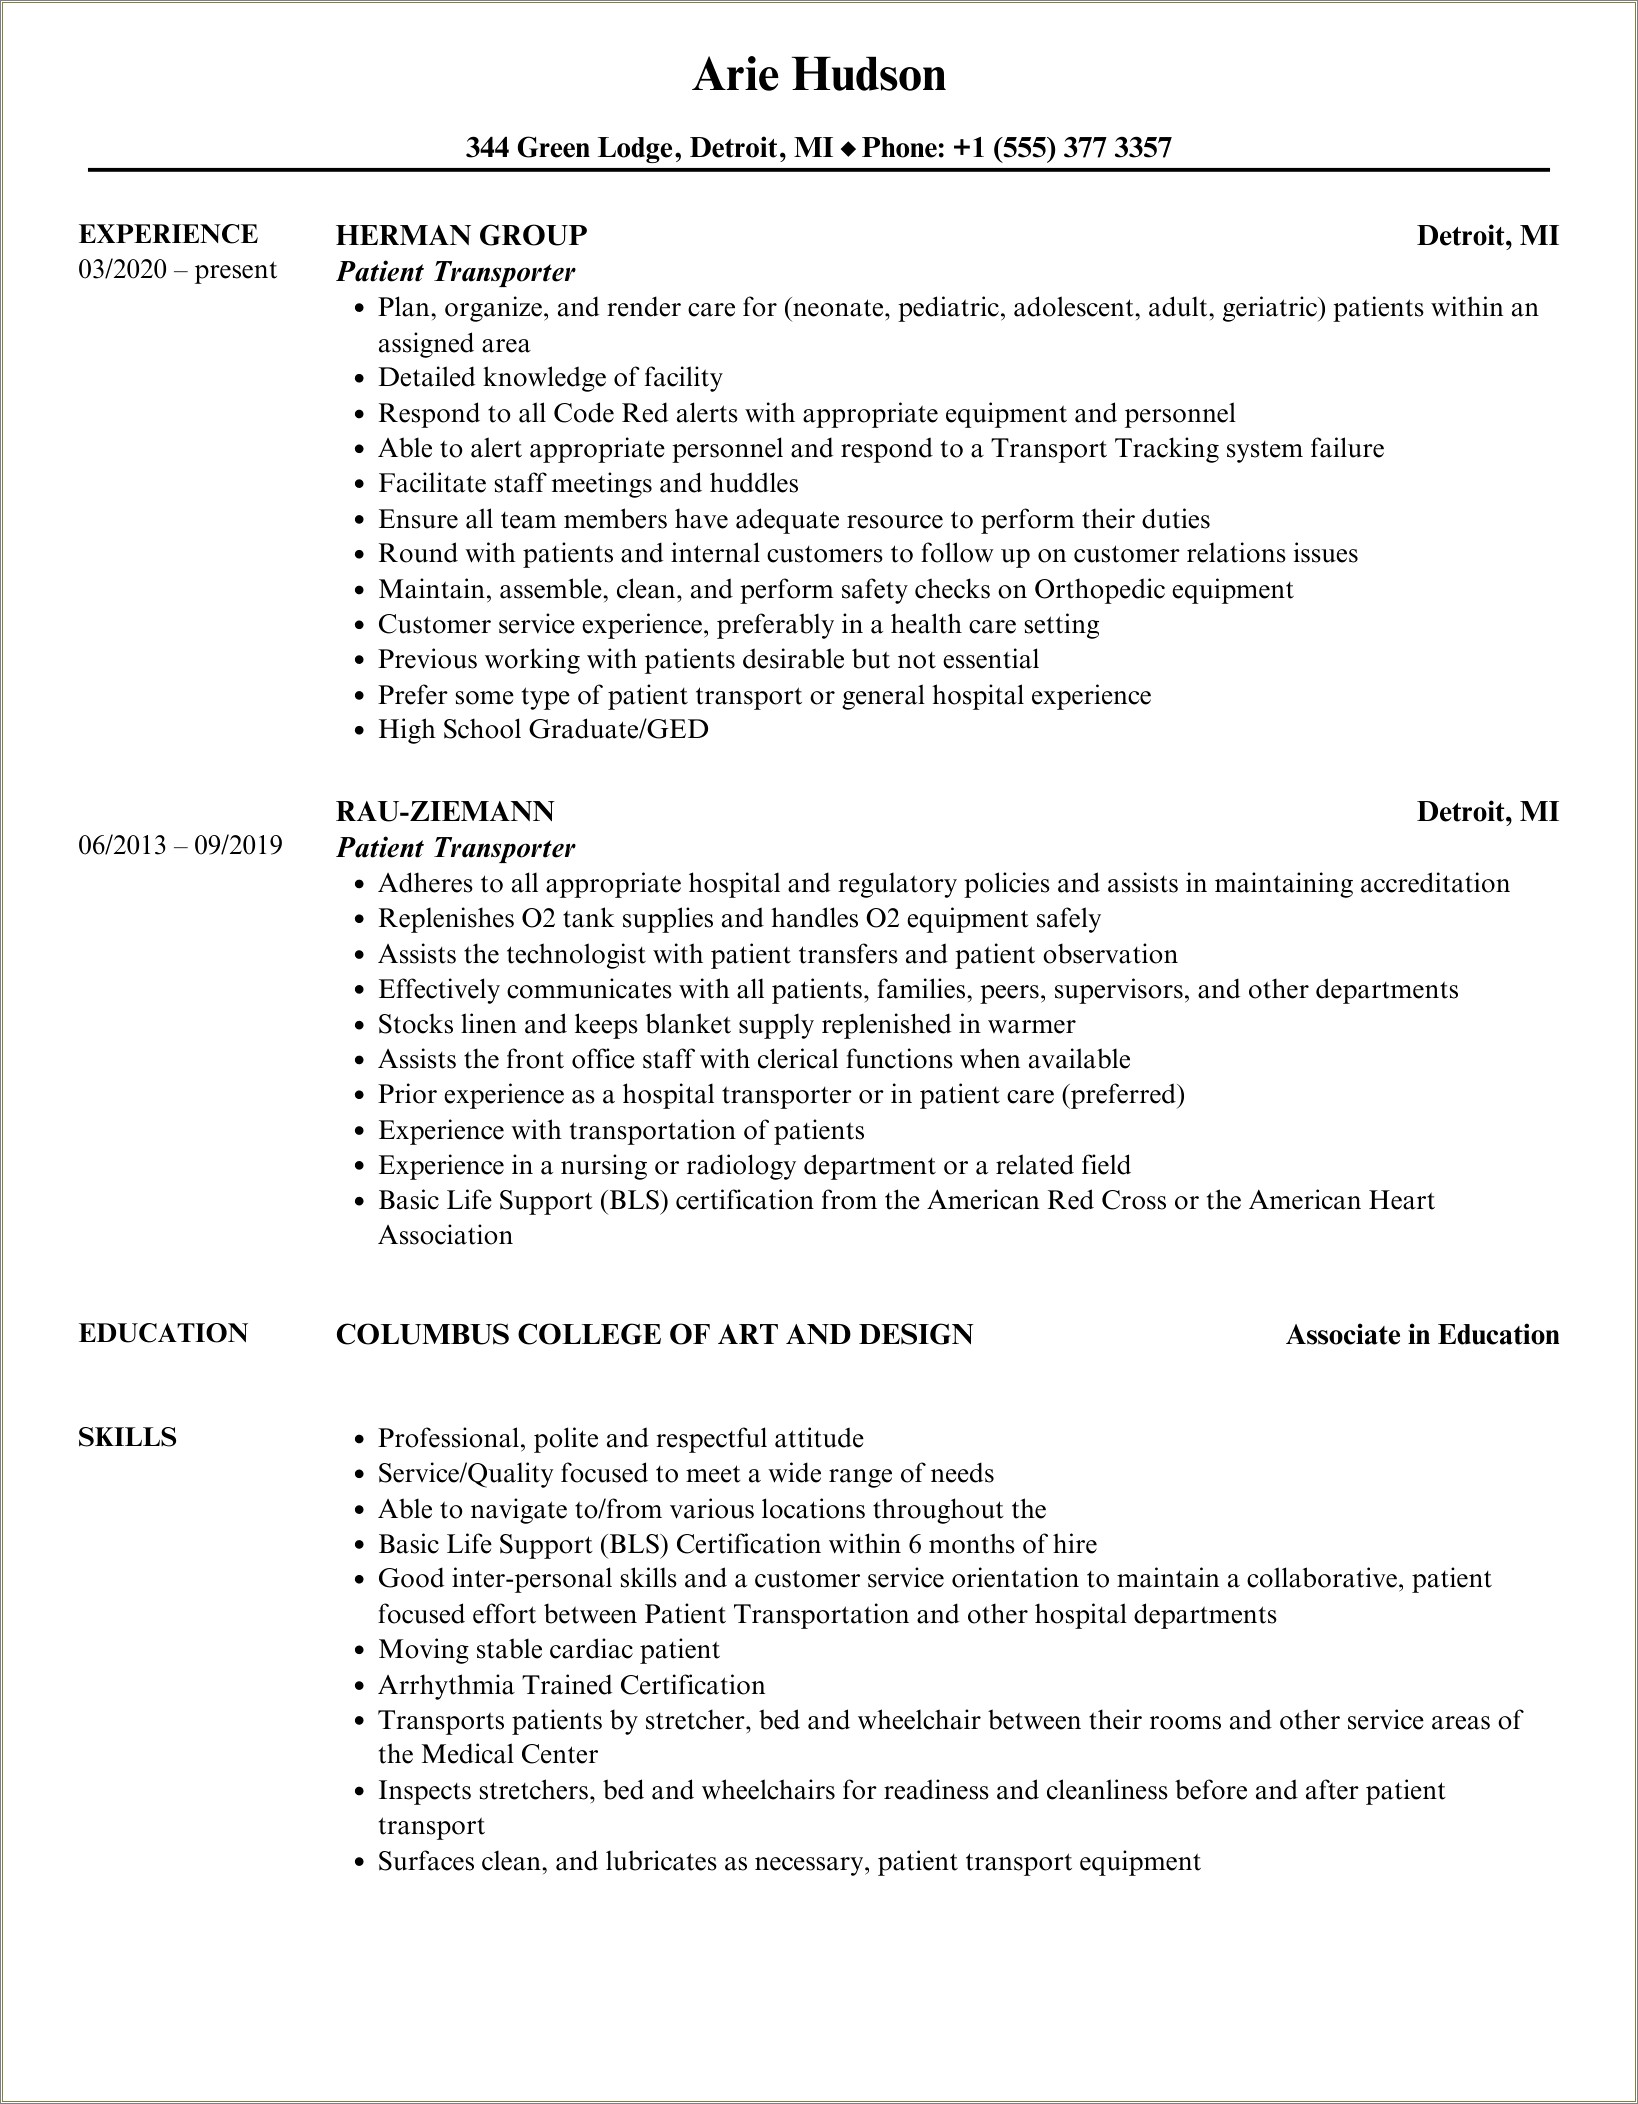 Patient Transport Assistant Job Description Resume